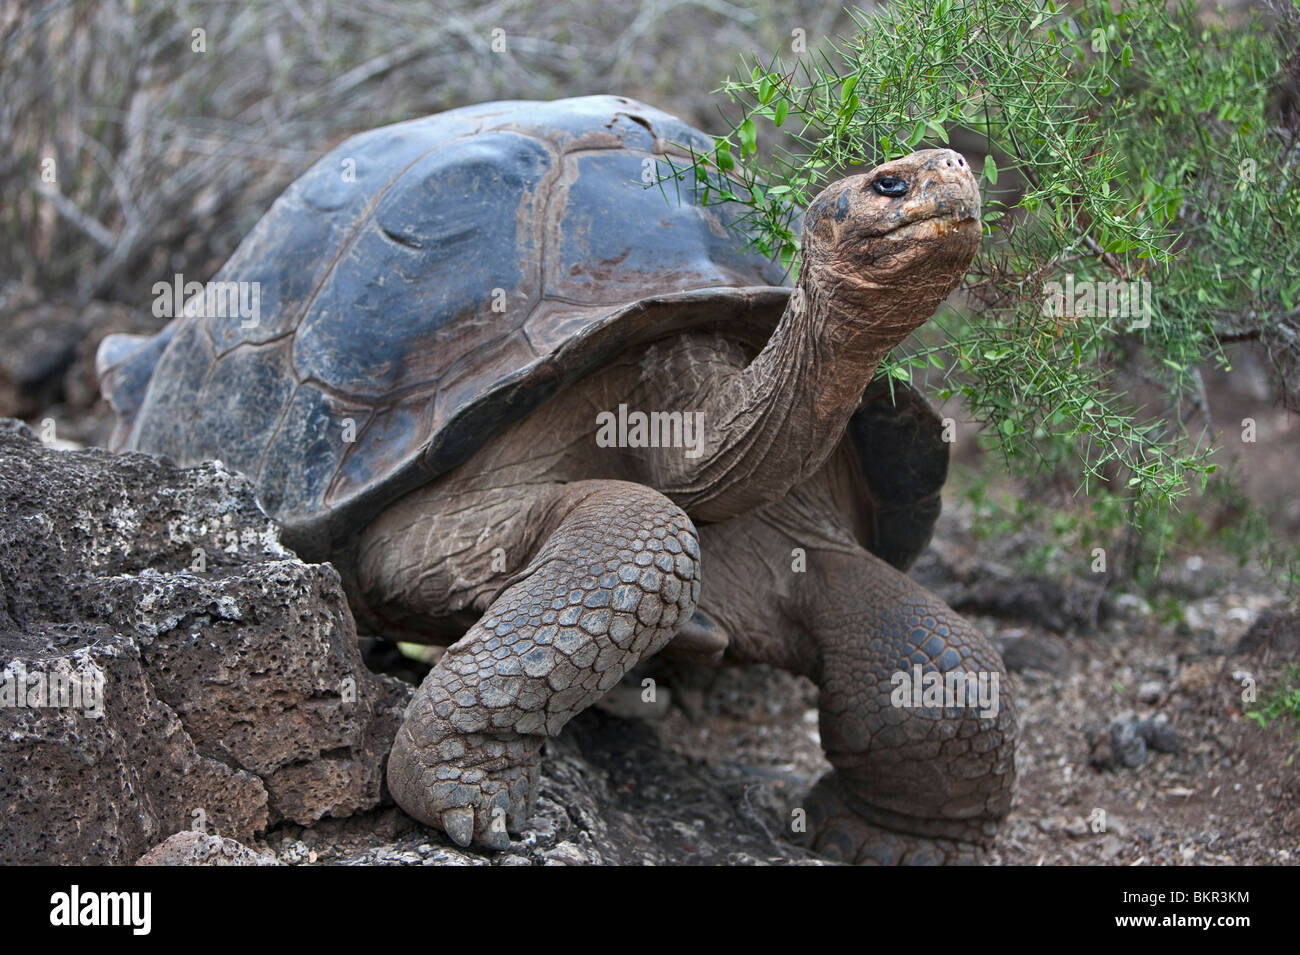 Galapagos-Inseln, gewölbte eine riesige Schildkröte nach dem die Galapagos-Inseln benannt wurden. Stockfoto